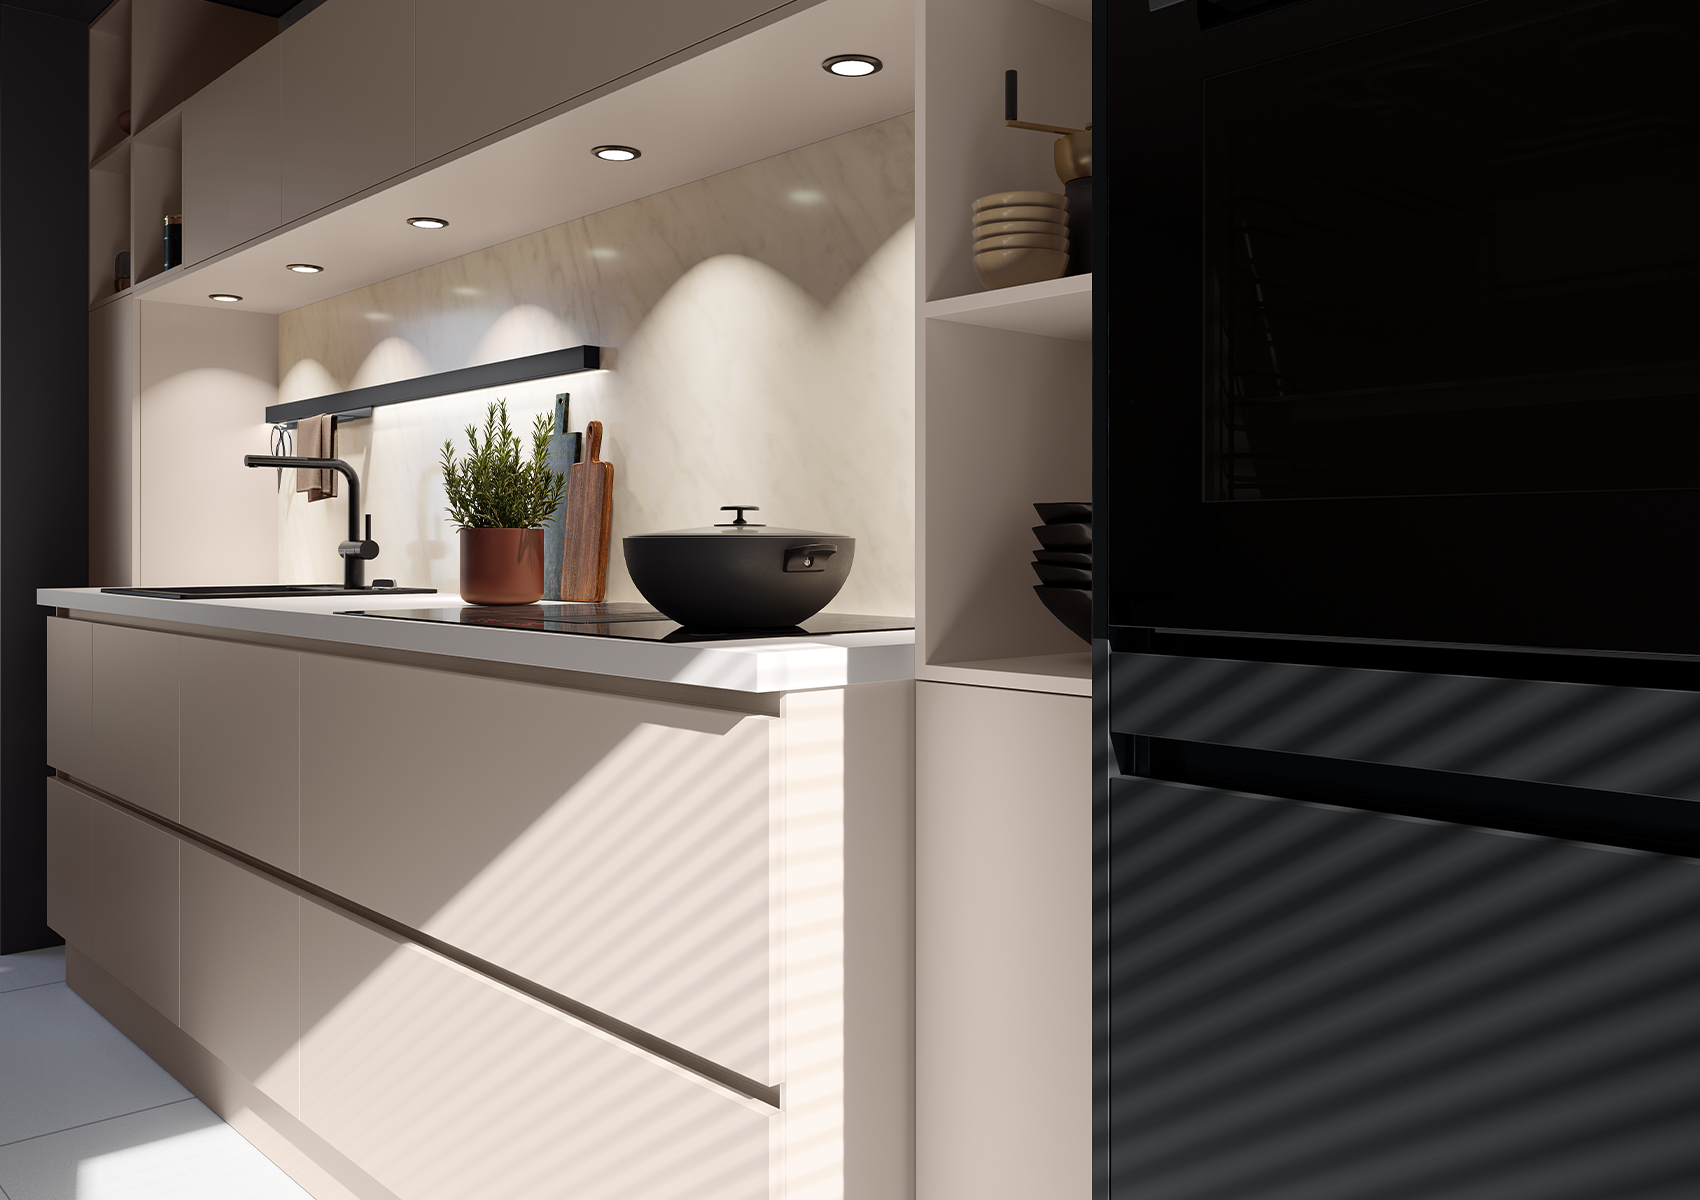 Vista del mueble de cocina con encimera y trasera de mármol, iluminado con focos y tiras de LED integradas en las columnas, equipado con riel Linero MosaiQ y ganchos dobles.